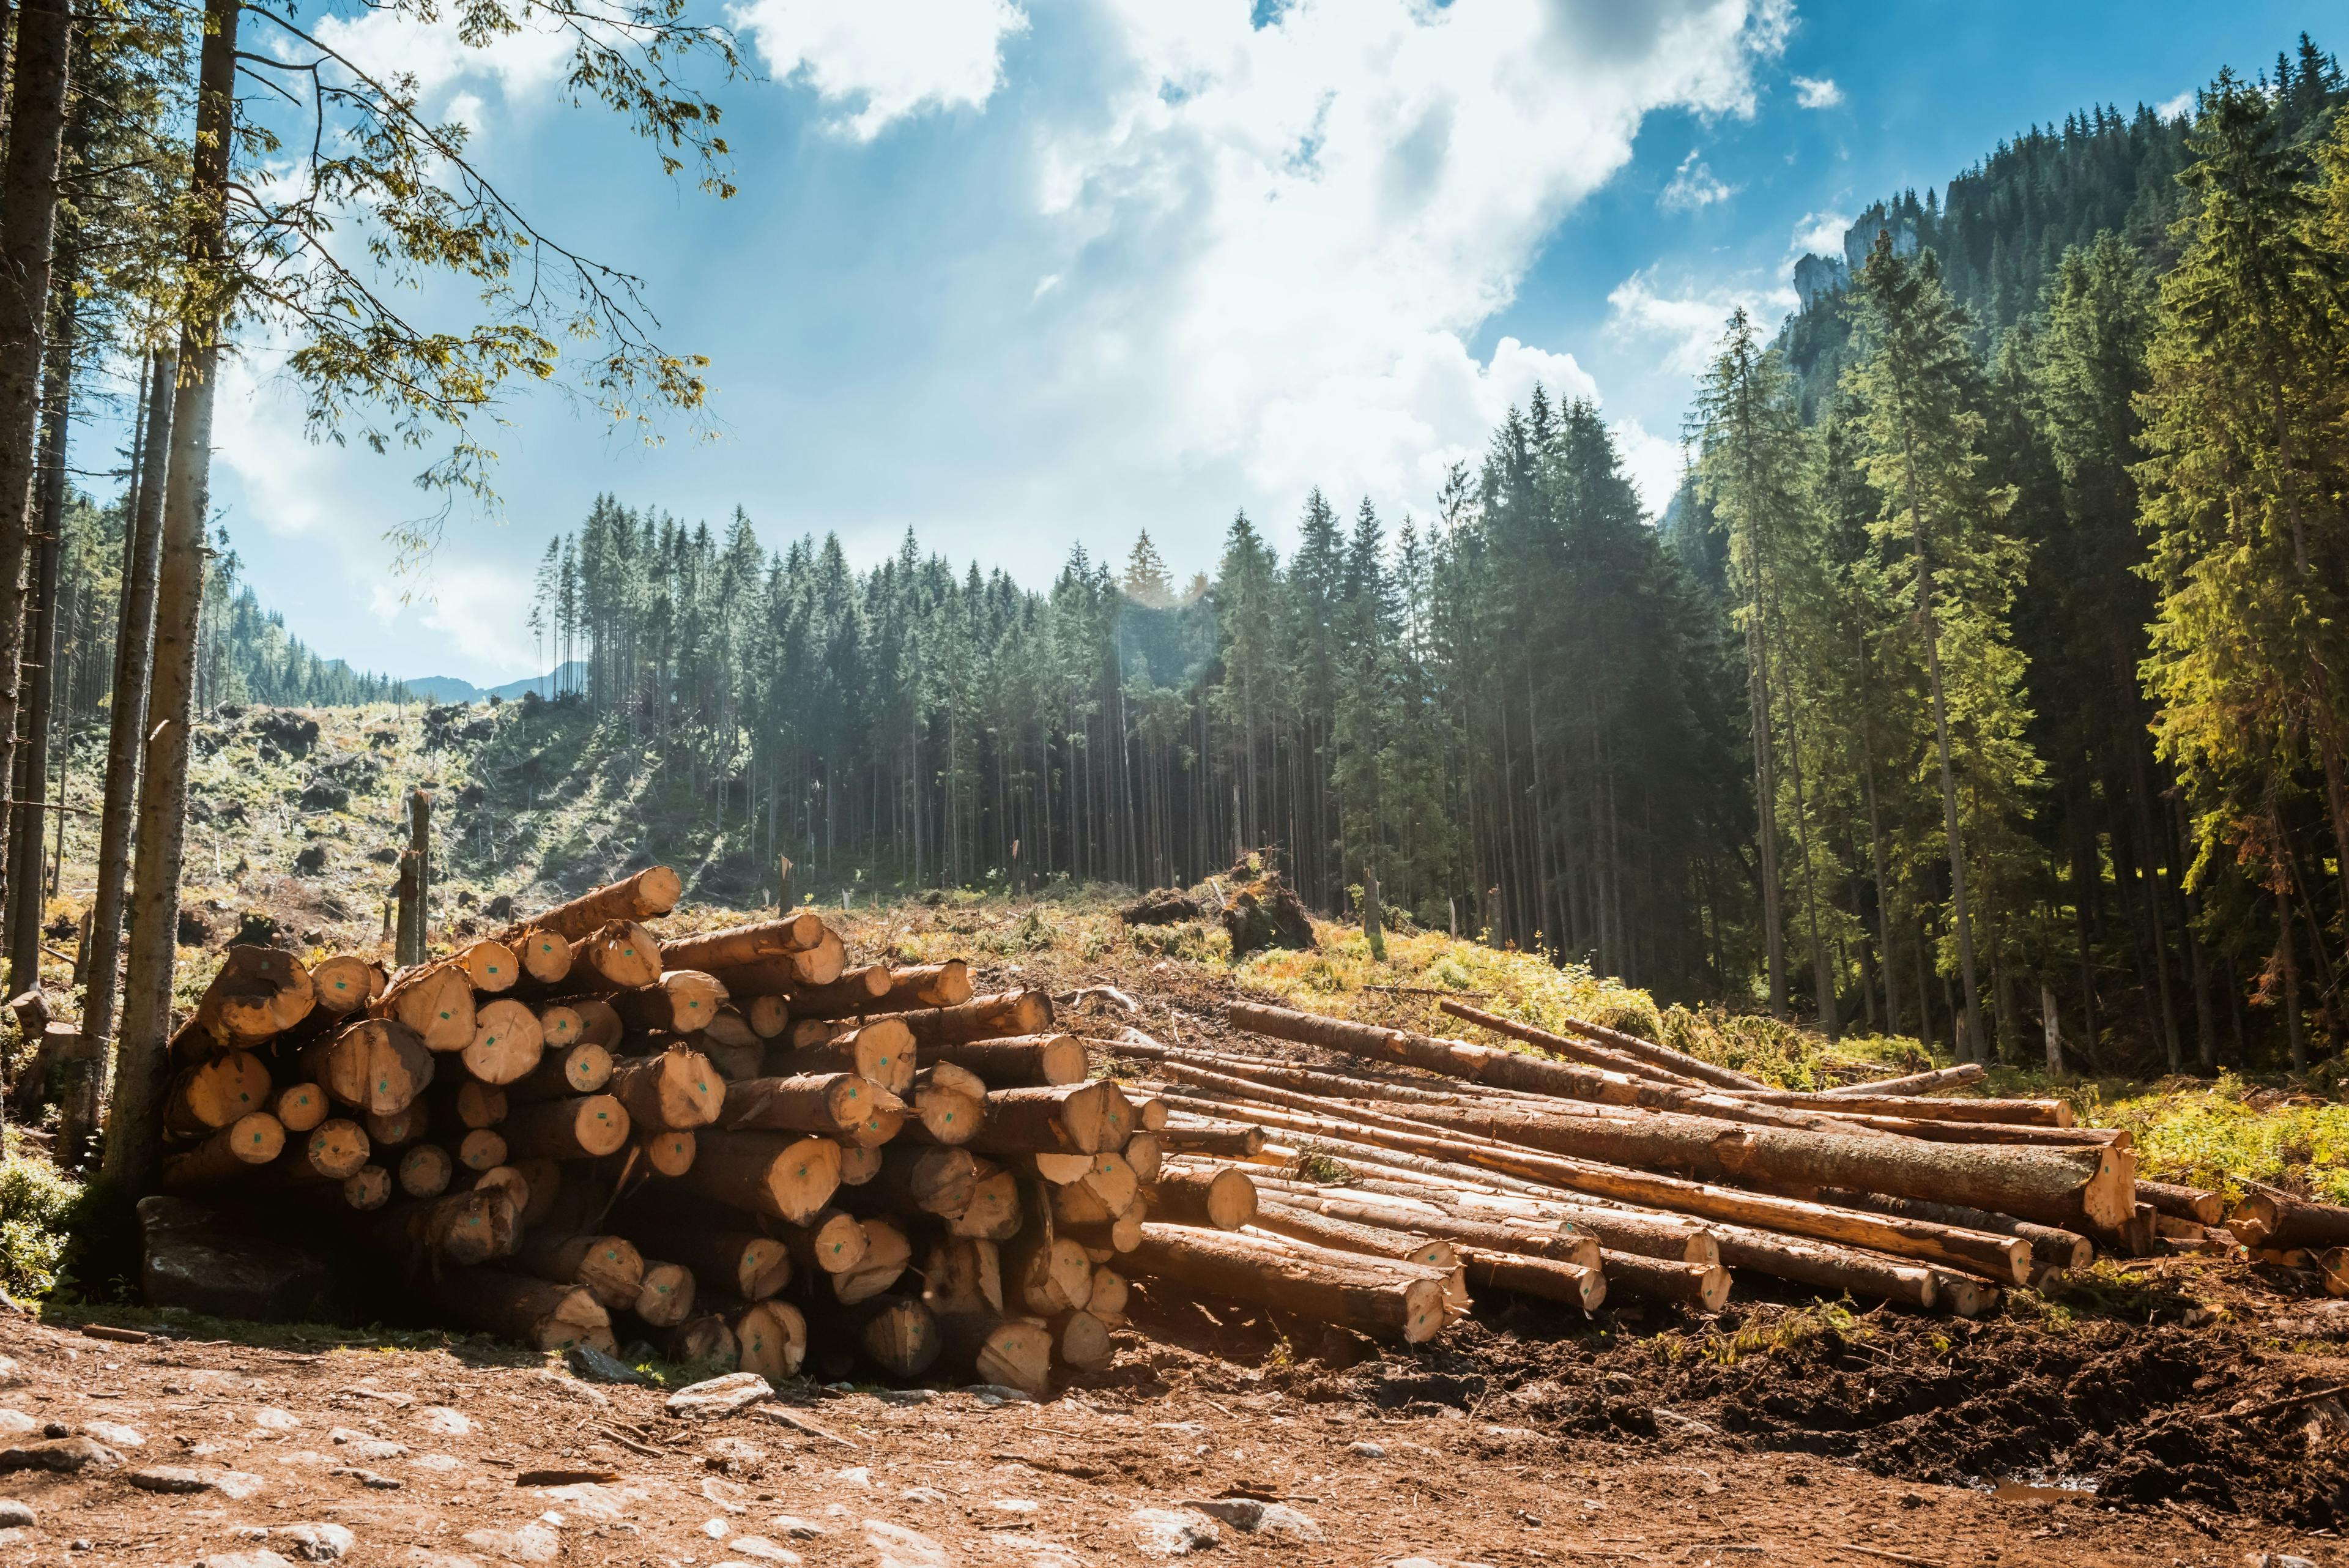 Log stacks along the forest road | © Image Credit: Kotangens – stock.adobe.com